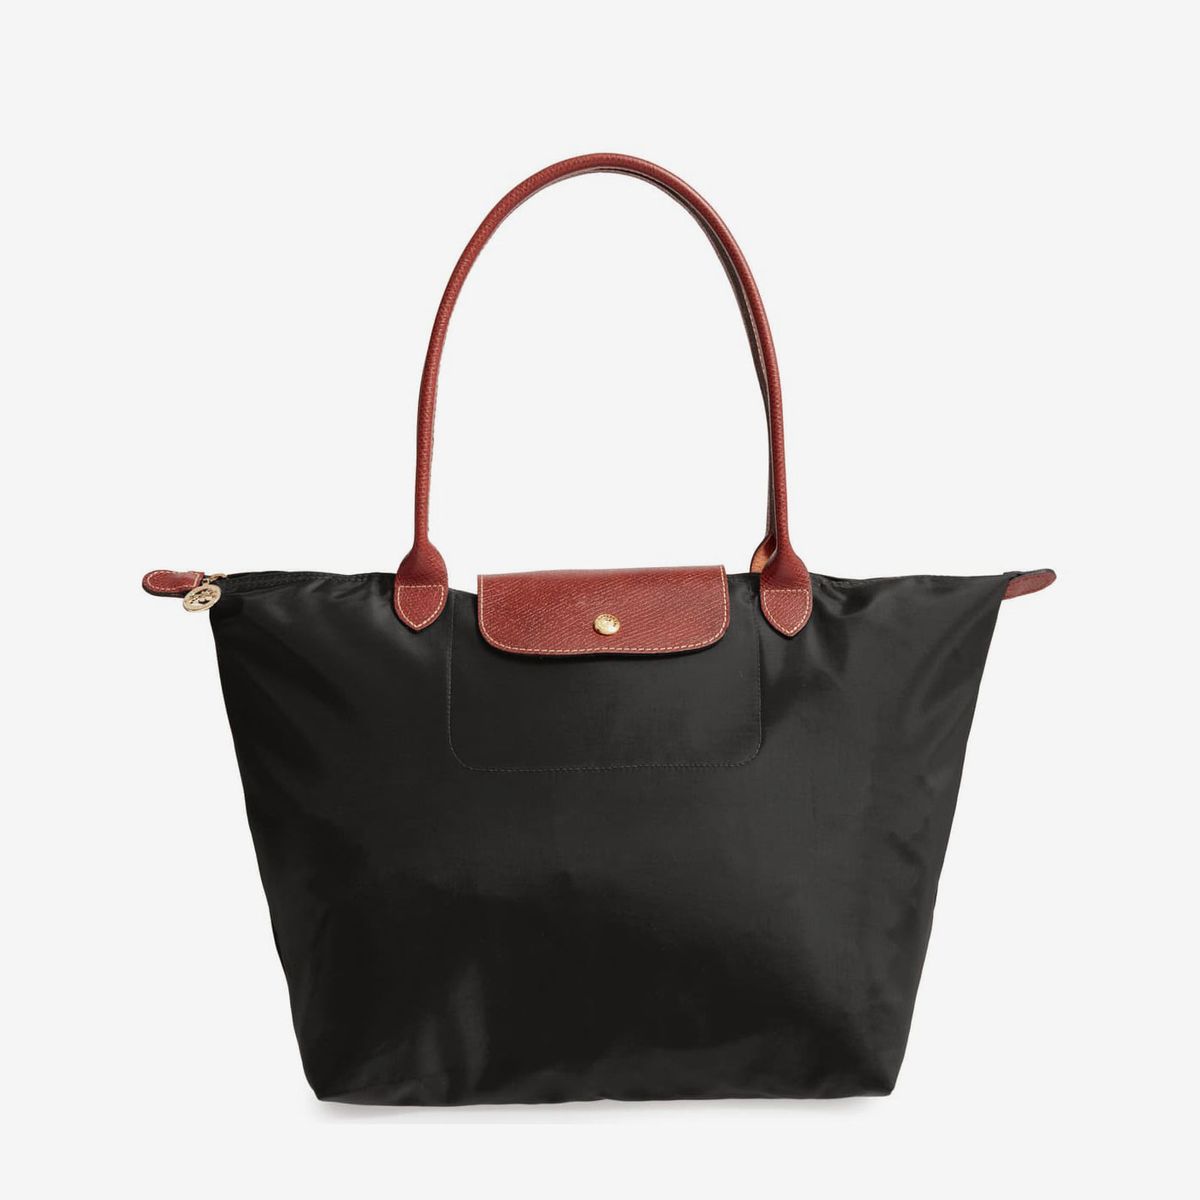 LANGMAN Women Lightweight Leather Bag Women Business Office Work Bag Briefcase Large Travel Handbag Shoulder Bag 